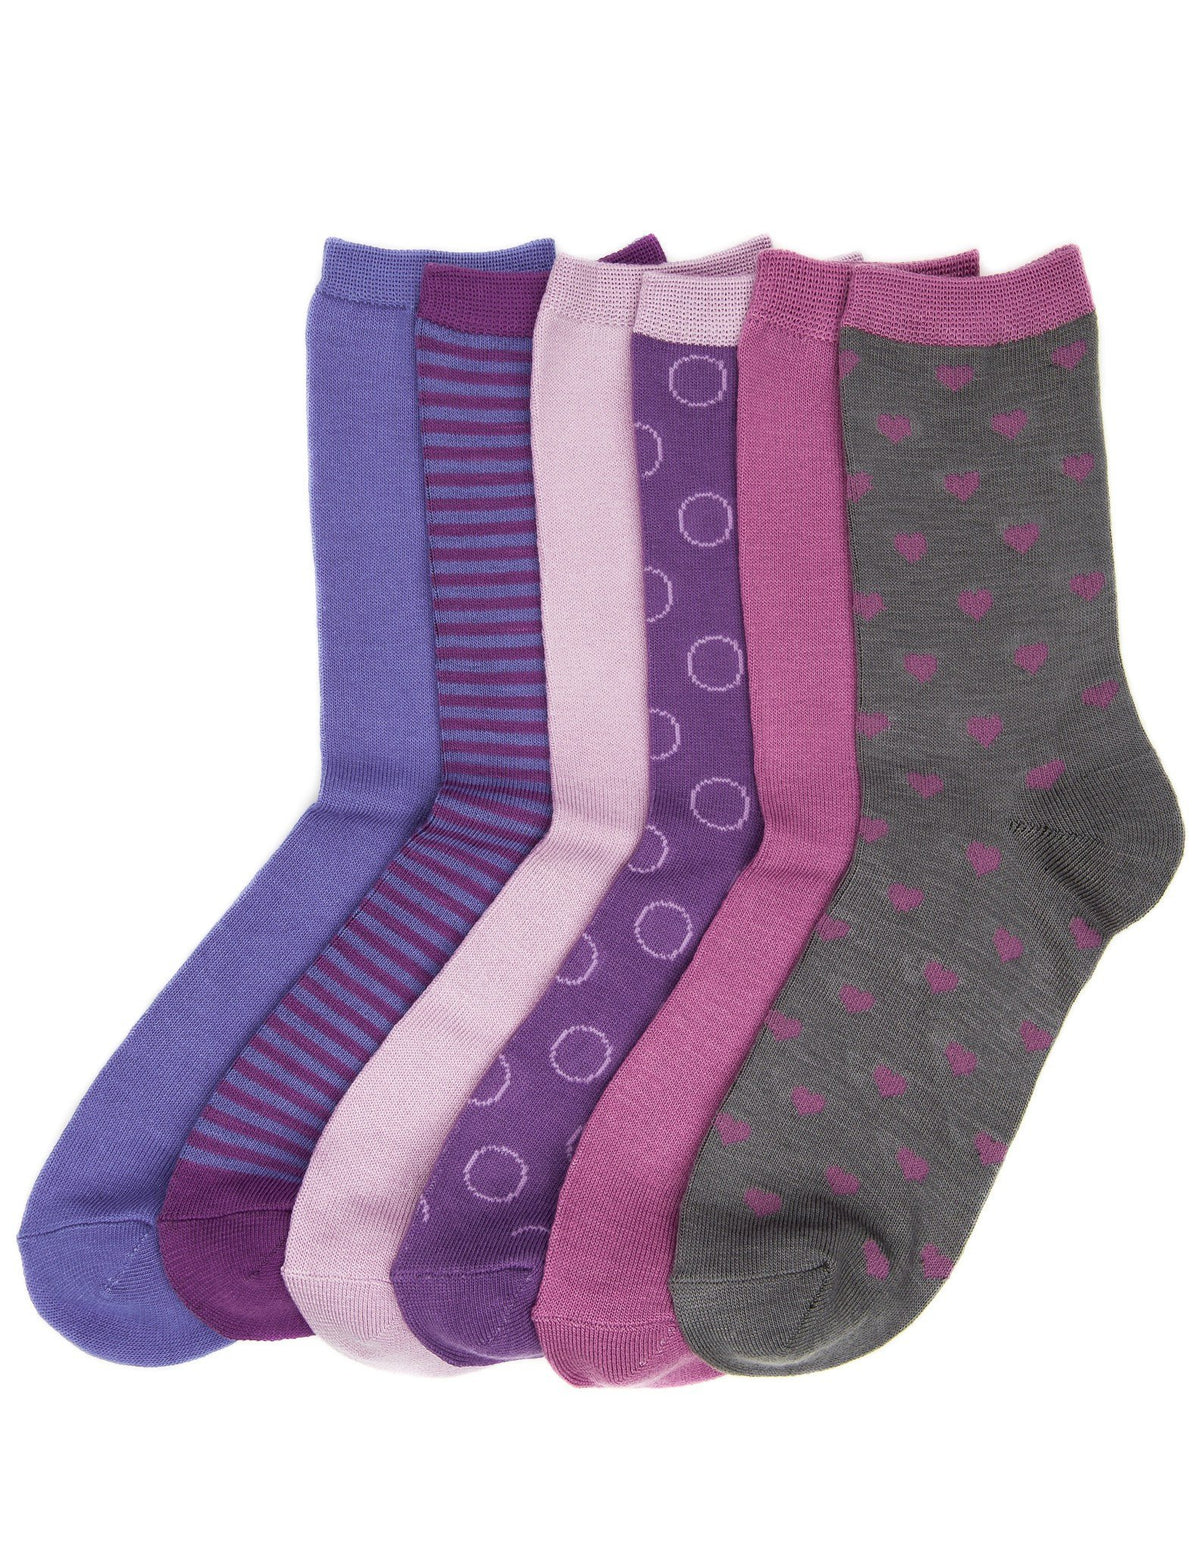 Women's Soft Premium Crew Socks - 6 Pairs - Set 2